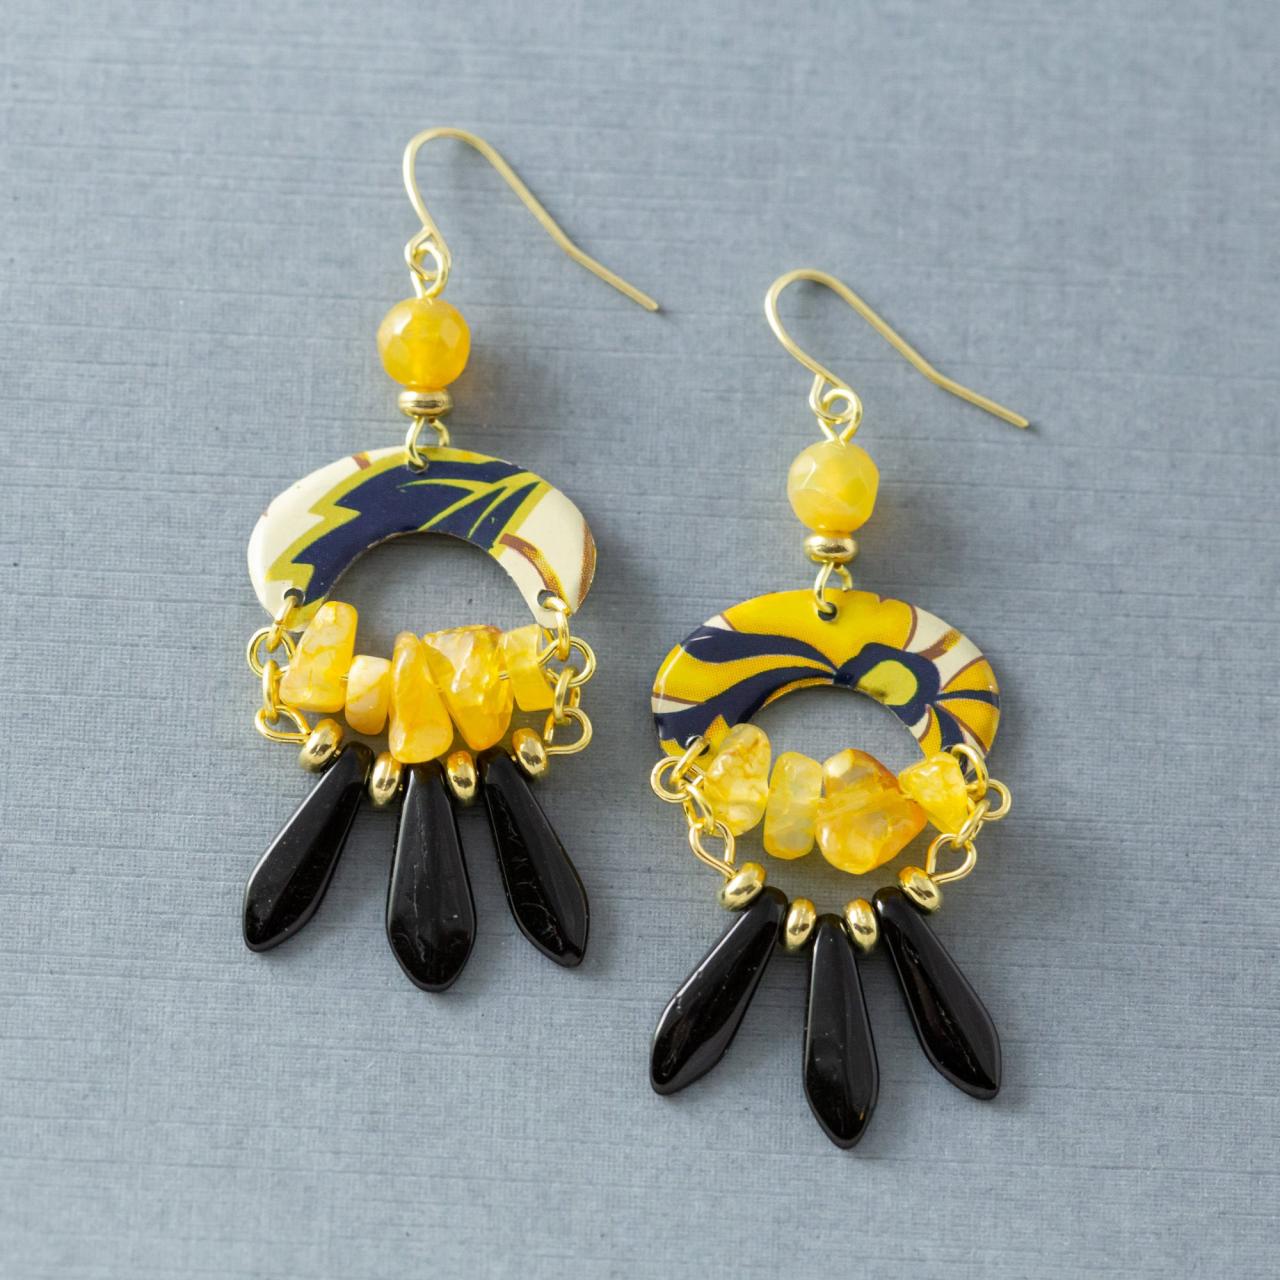 Black & Yellow Agate Earrings, Tin Earrings, Spike Earrings, Fringe Earrings, Bohemian Jewelry, Boho Jewelry, Statement Jewelry